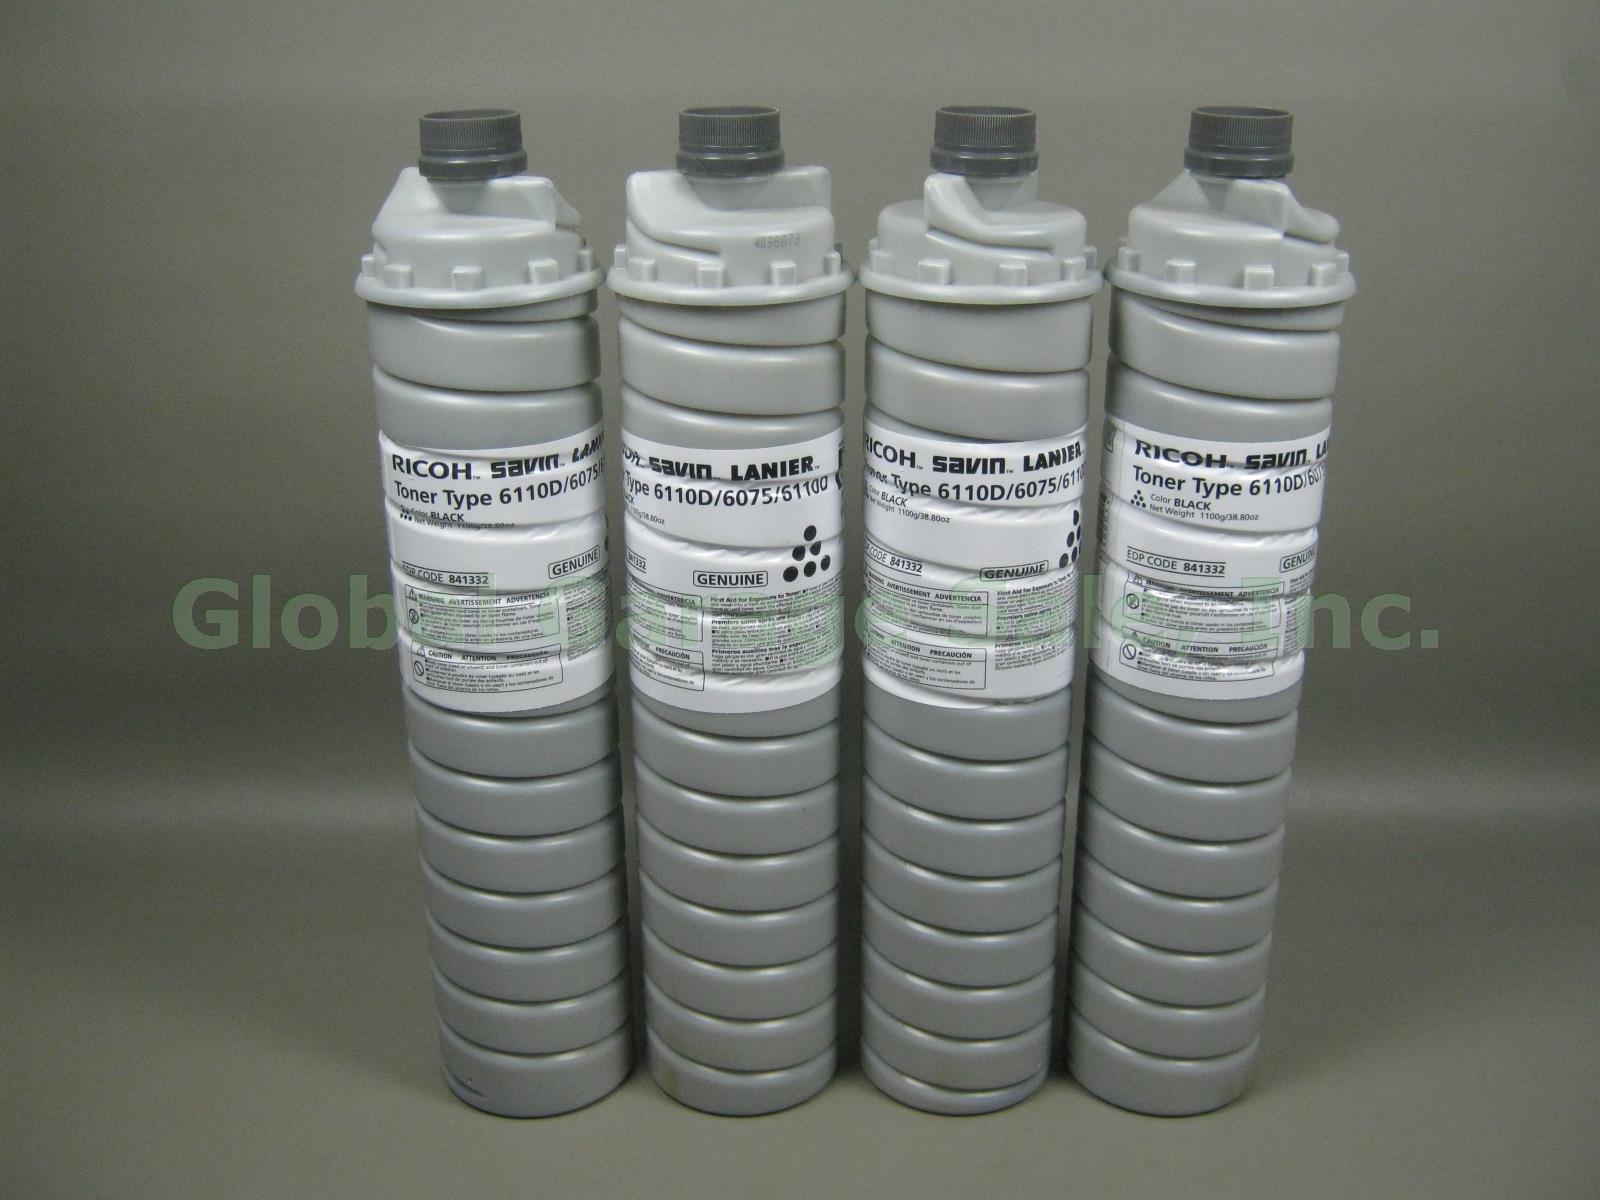 4 New Ricoh Savin Lanier Toner Type 6110D 6075 Black Bottle EDP Code 841332 Lot